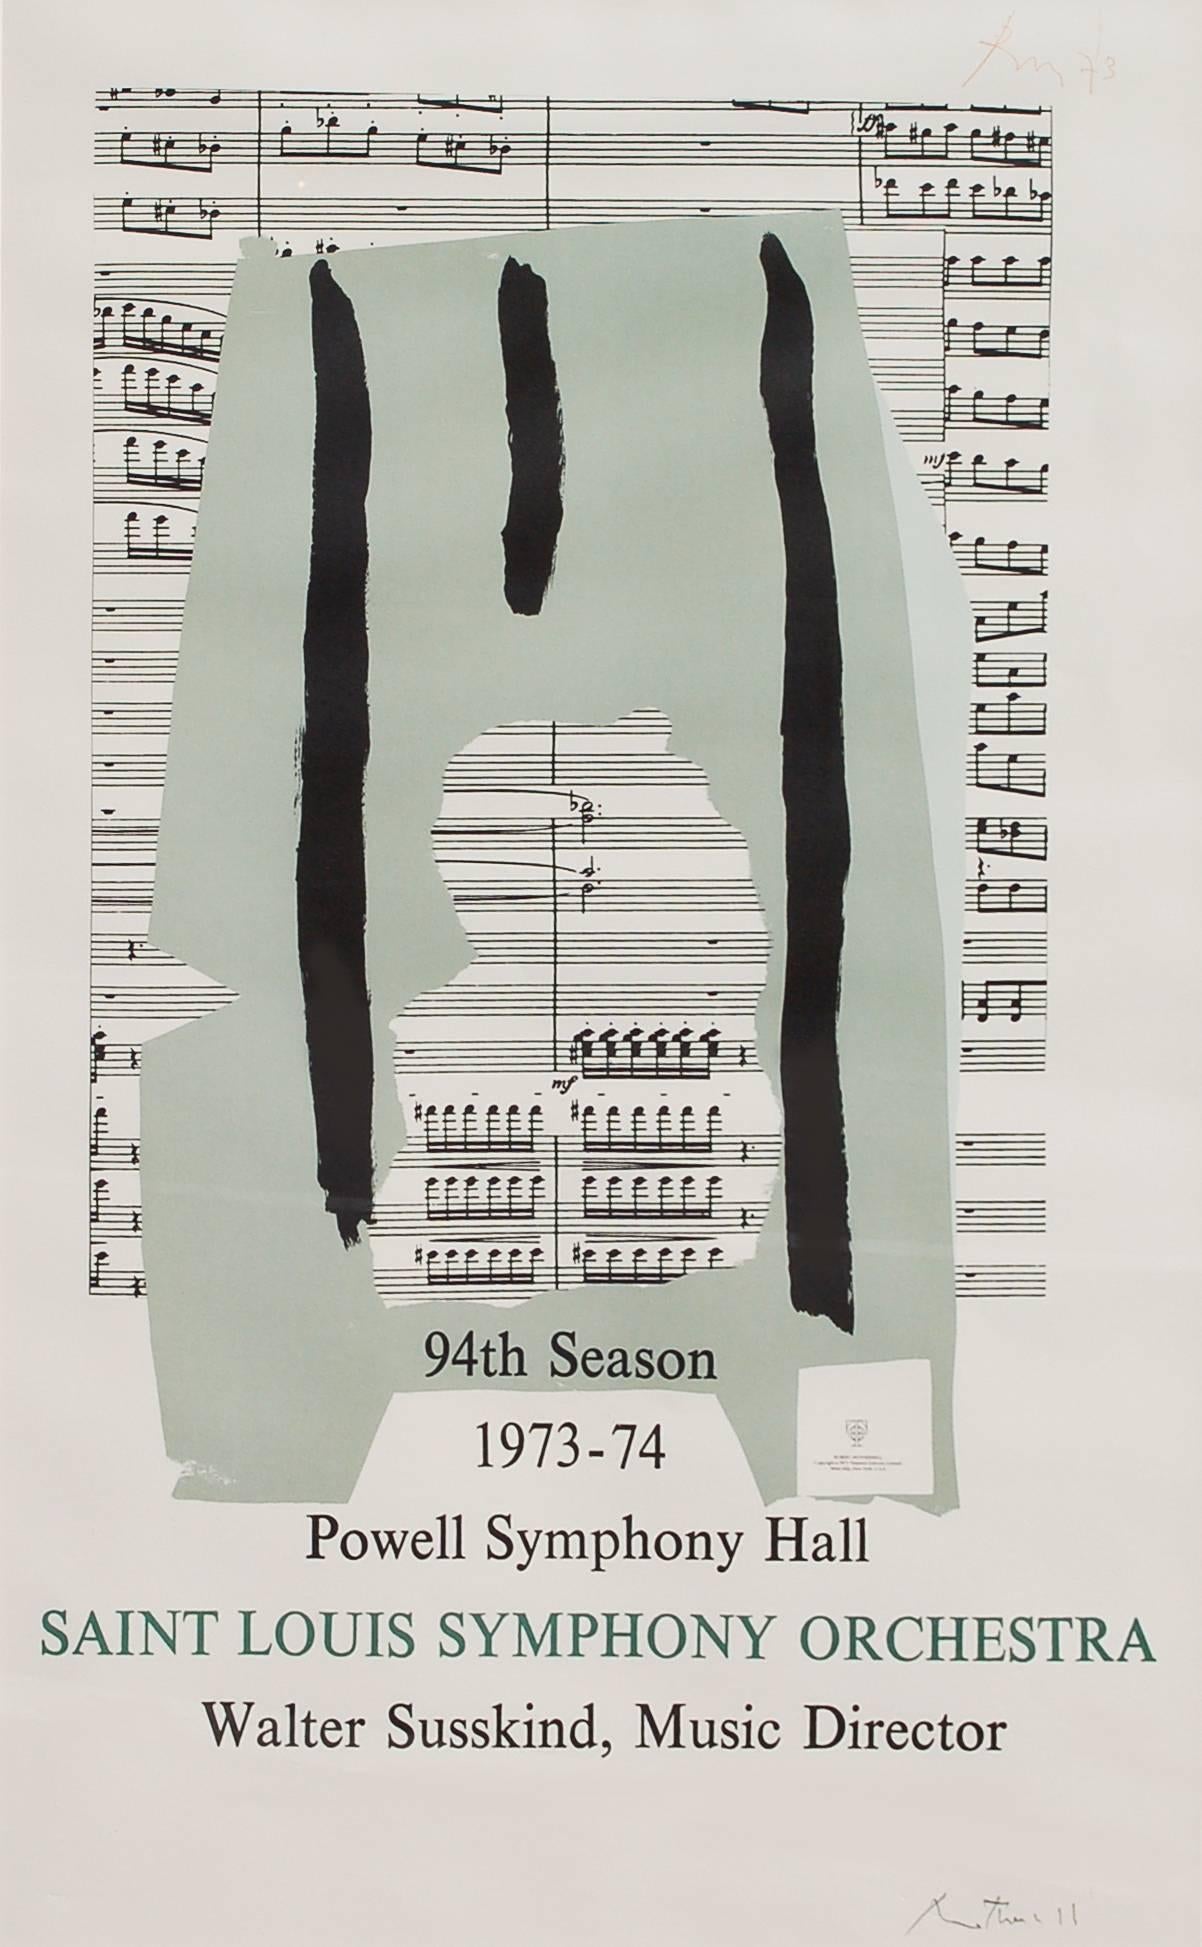 Abstract Print Robert Motherwell - Affiche de l'Orchestre de symphonie de St. Louis (Poster) - édition limitée signée